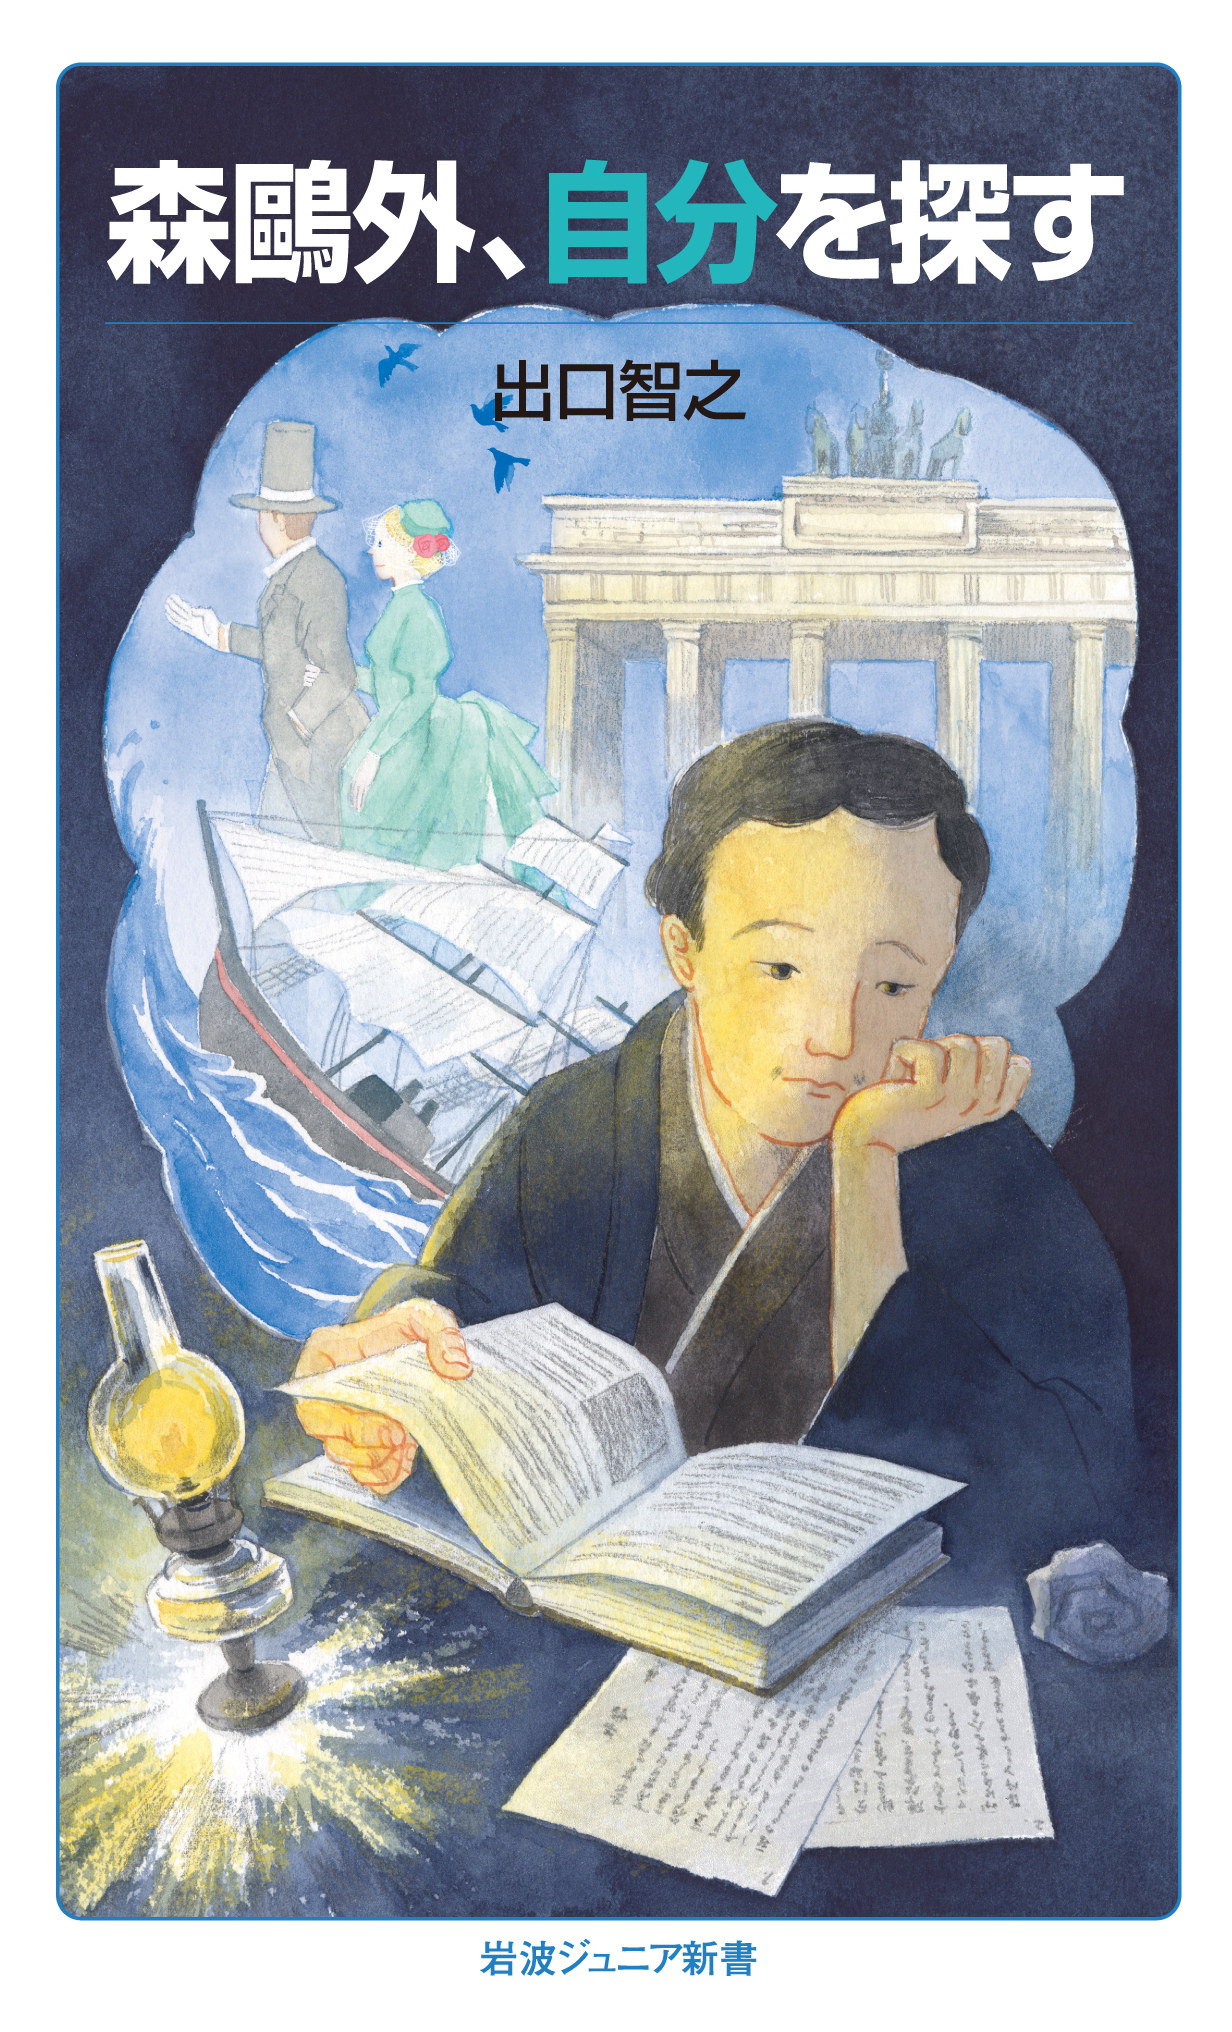 An illustration of Mori Ogai